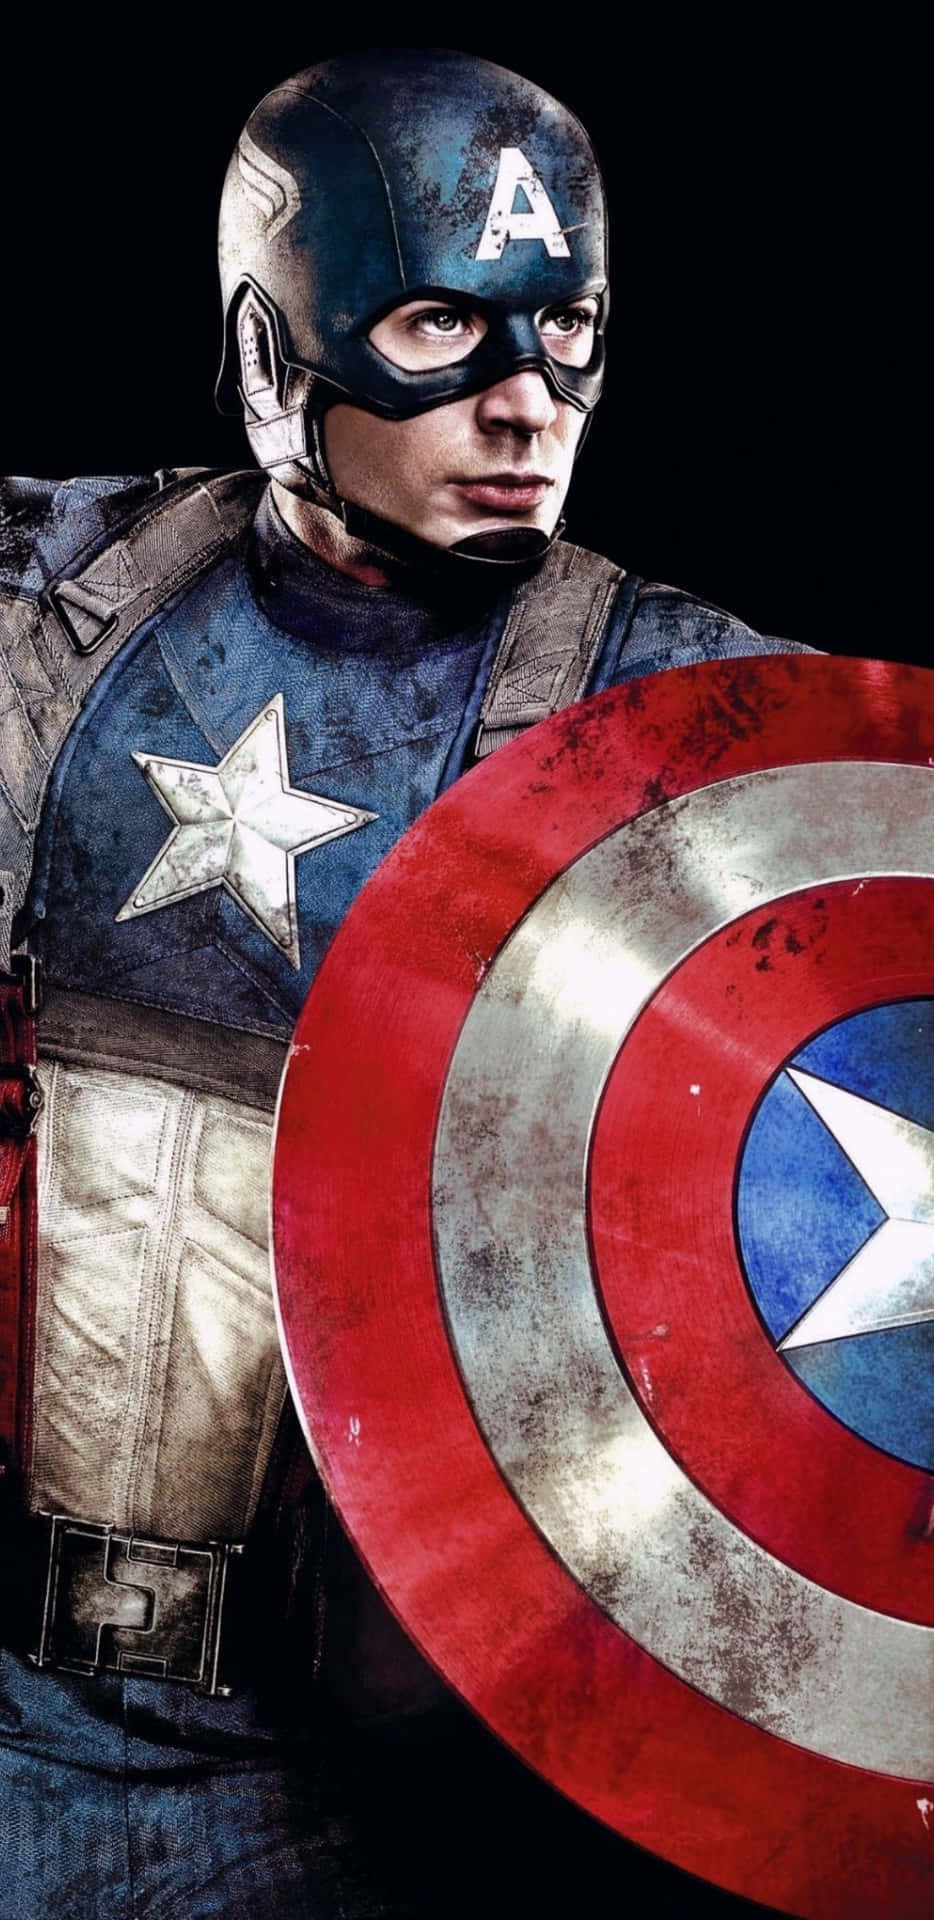 Pixel3xl Bakgrundsbild Av Captain America Från Den Första Avengern.